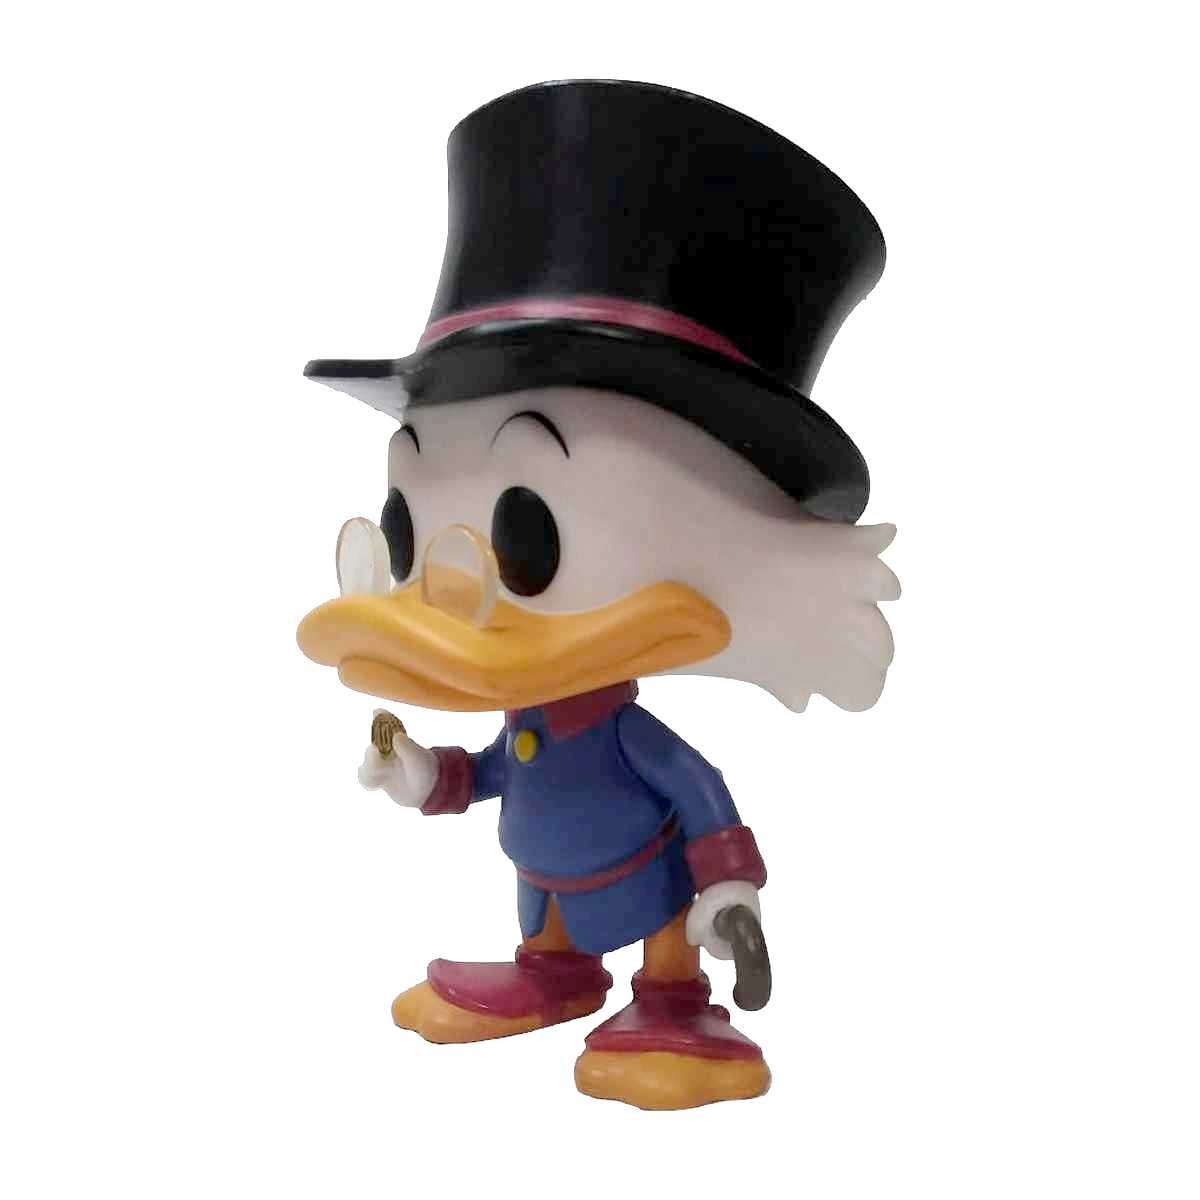 Funko Pop! Disney Duck Tales Tio Patinhas (Scrooge McDuck) vinyl figure número 306 Loose